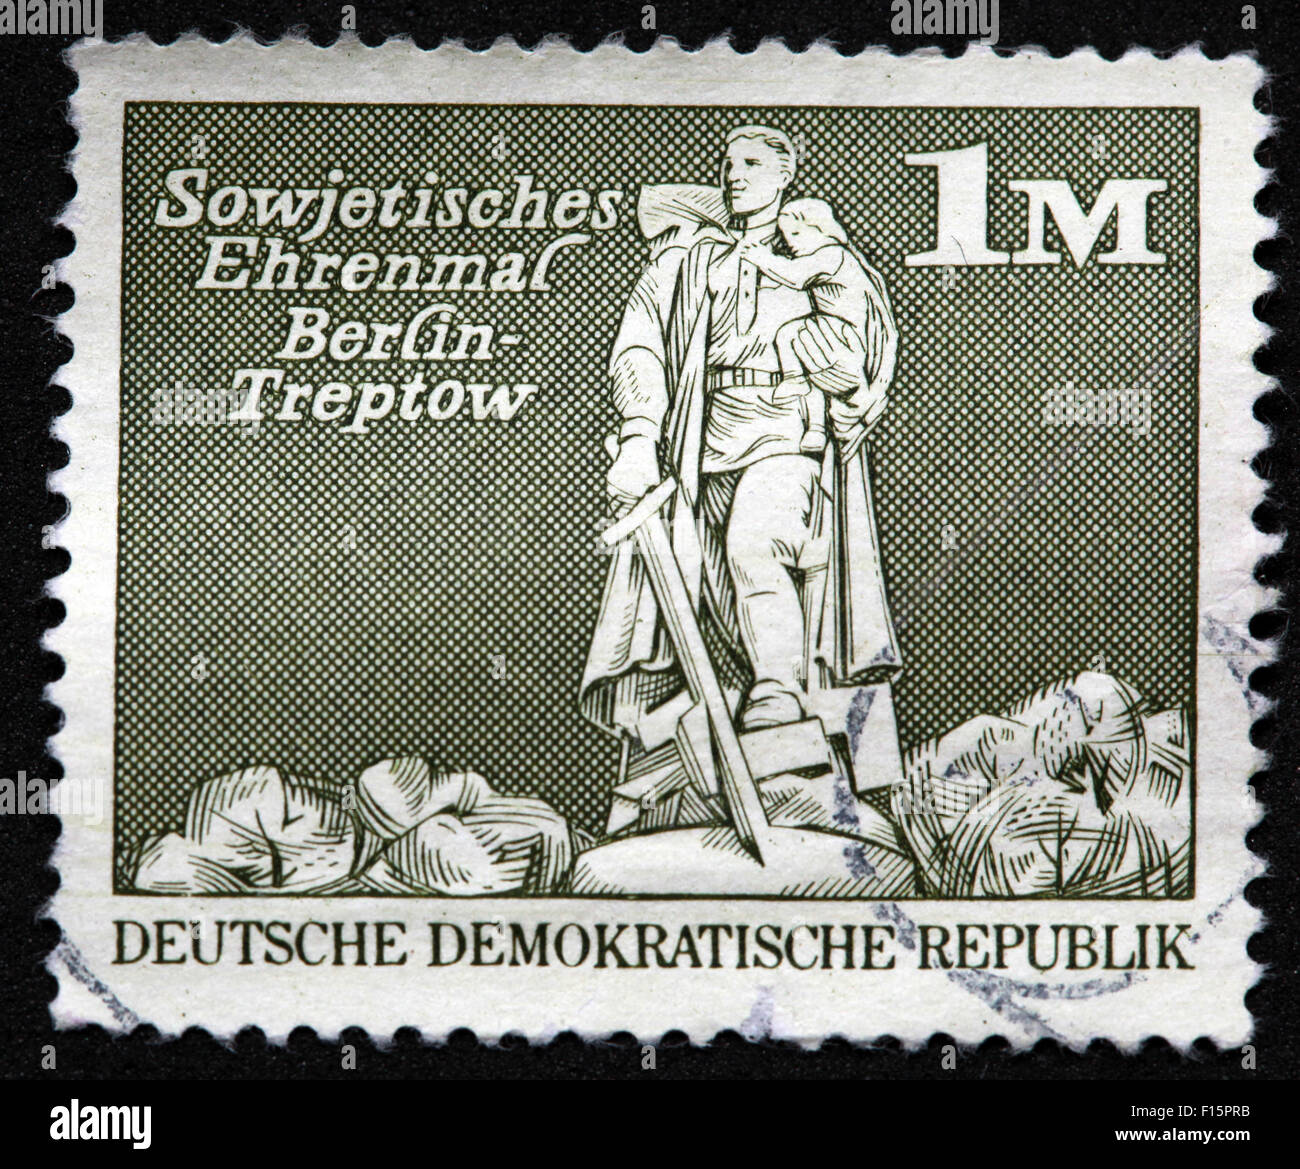 DDR Deutsche Demokratische Republik Sowjetisches Ehrenmal Berlin-Treptow 1M Stamp Banque D'Images